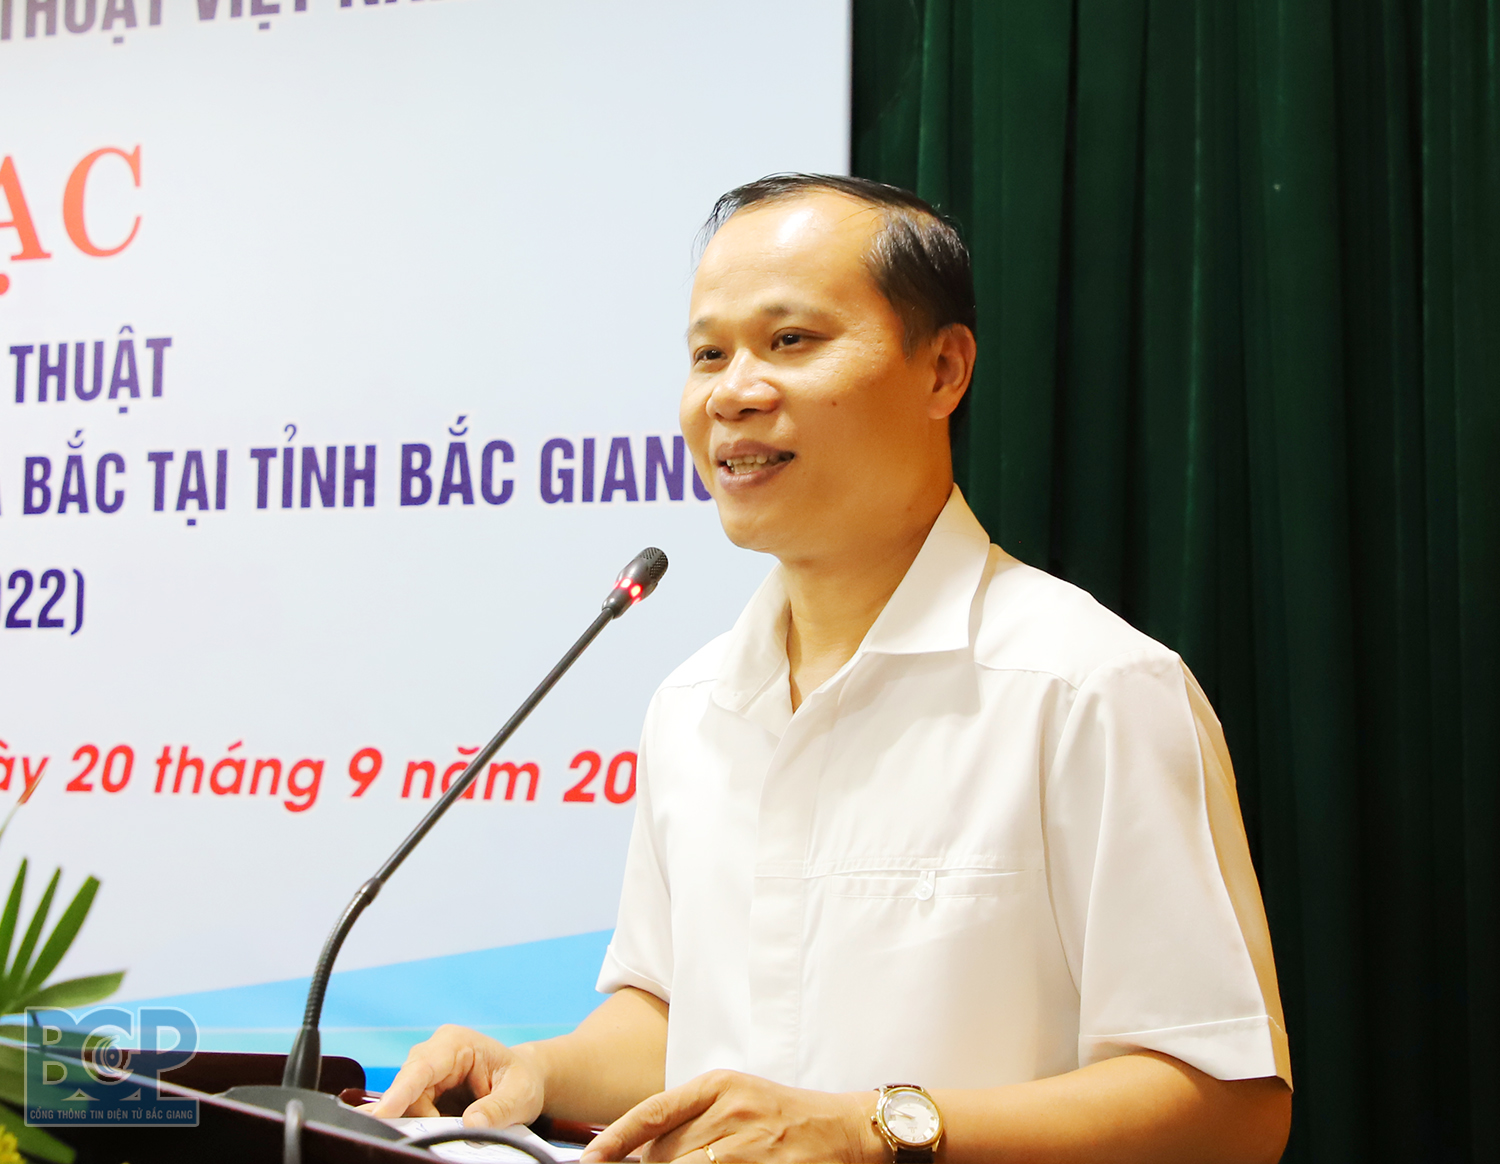 Liên hiệp các Hội Văn học nghệ thuật Việt Nam tổ chức trại sáng tác văn học nghệ thuật tại tỉnh Bắc Giang - 3